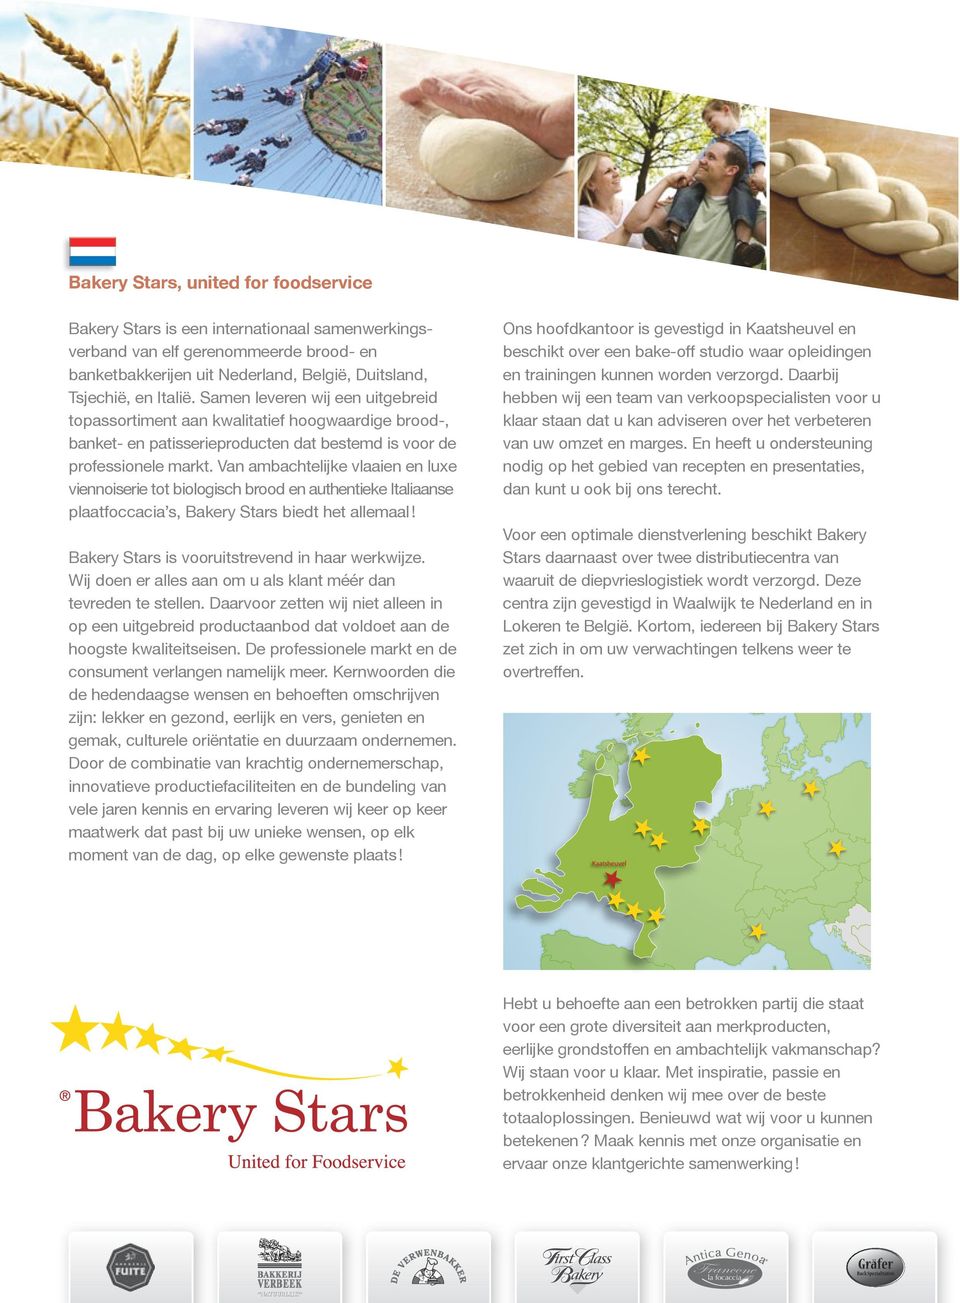 Van ambachtelijke vlaaien en luxe viennoiserie tot biologisch brood en authentieke Italiaanse plaatfoccacia s, Bakery Stars biedt het allemaal! Bakery Stars is vooruitstrevend in haar werkwijze.